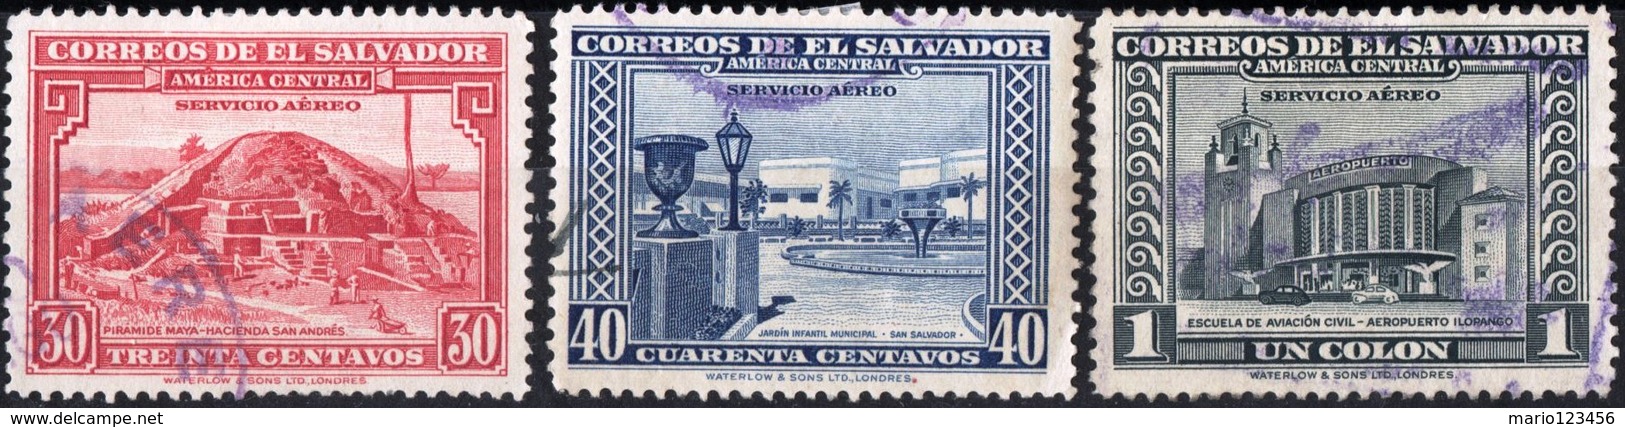 EL SALVADOR, POSTA AEREA, AIRMAIL, MONUMENTI, 1946, FRANCOBOLLI USATI,  Michel 605-607   Scott C99-C101 - El Salvador